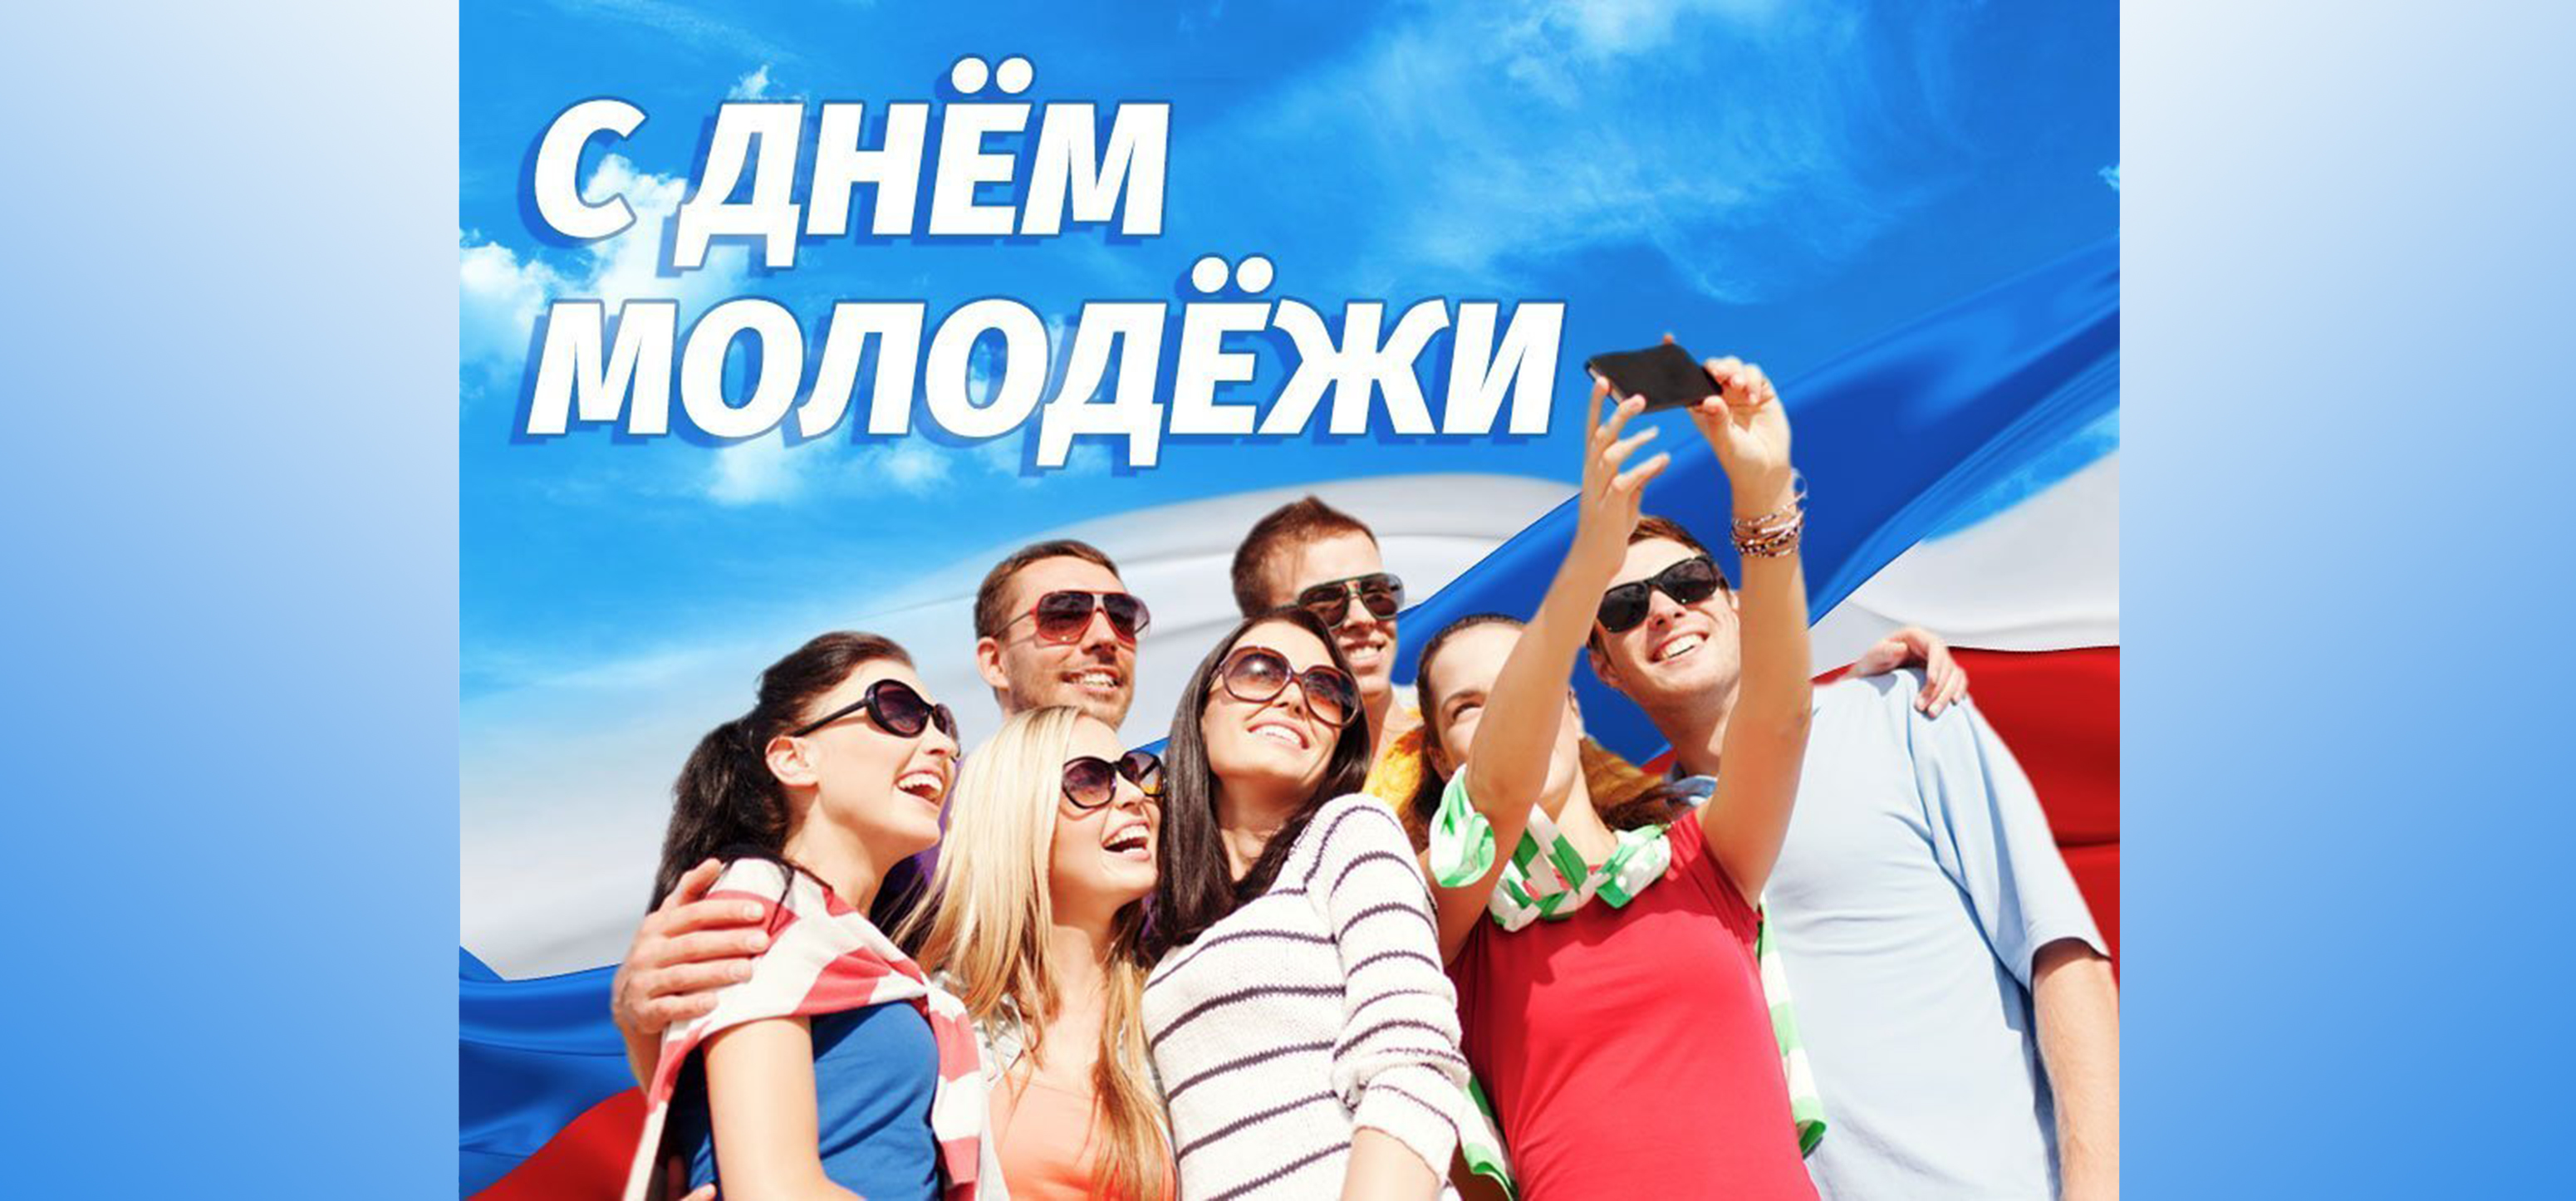 День молодежи в марте. С днем молодежи. День молодёжи (Россия). С днем молодежи поздравление. 27 Июня день молодежи.